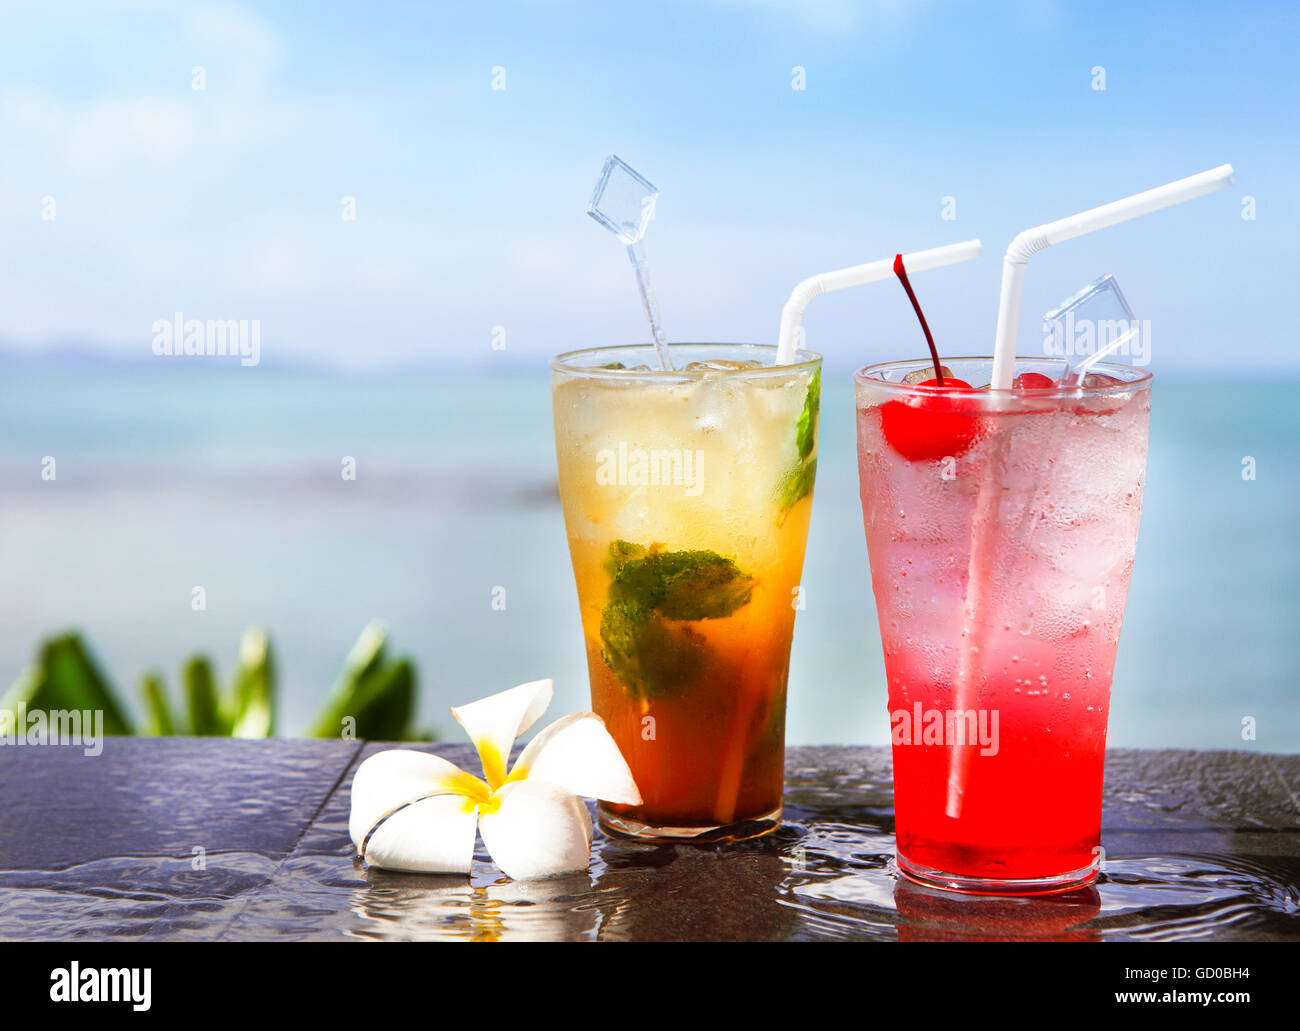 Zwei Cocktails am Pool, Meer Hintergrund Stockfotografie - Alamy